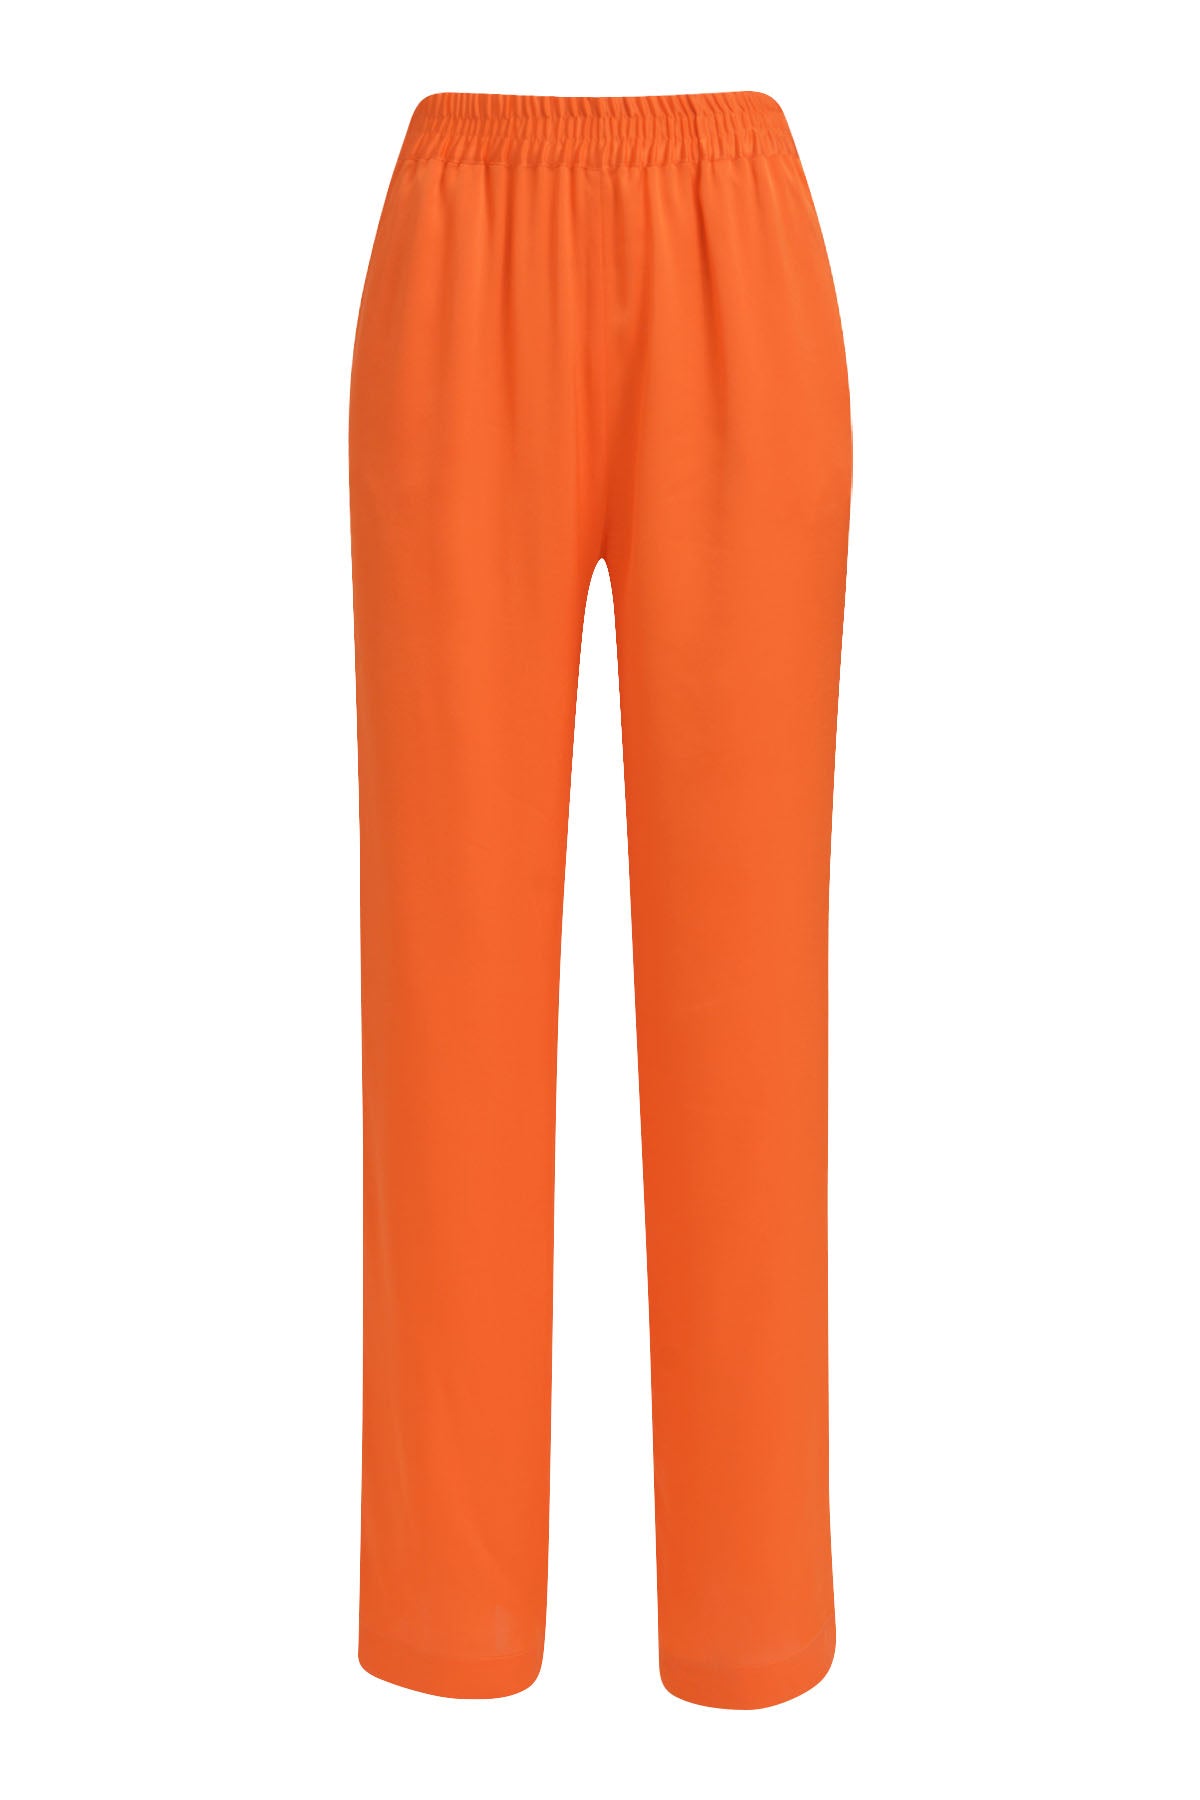 Milano Orange Trousers